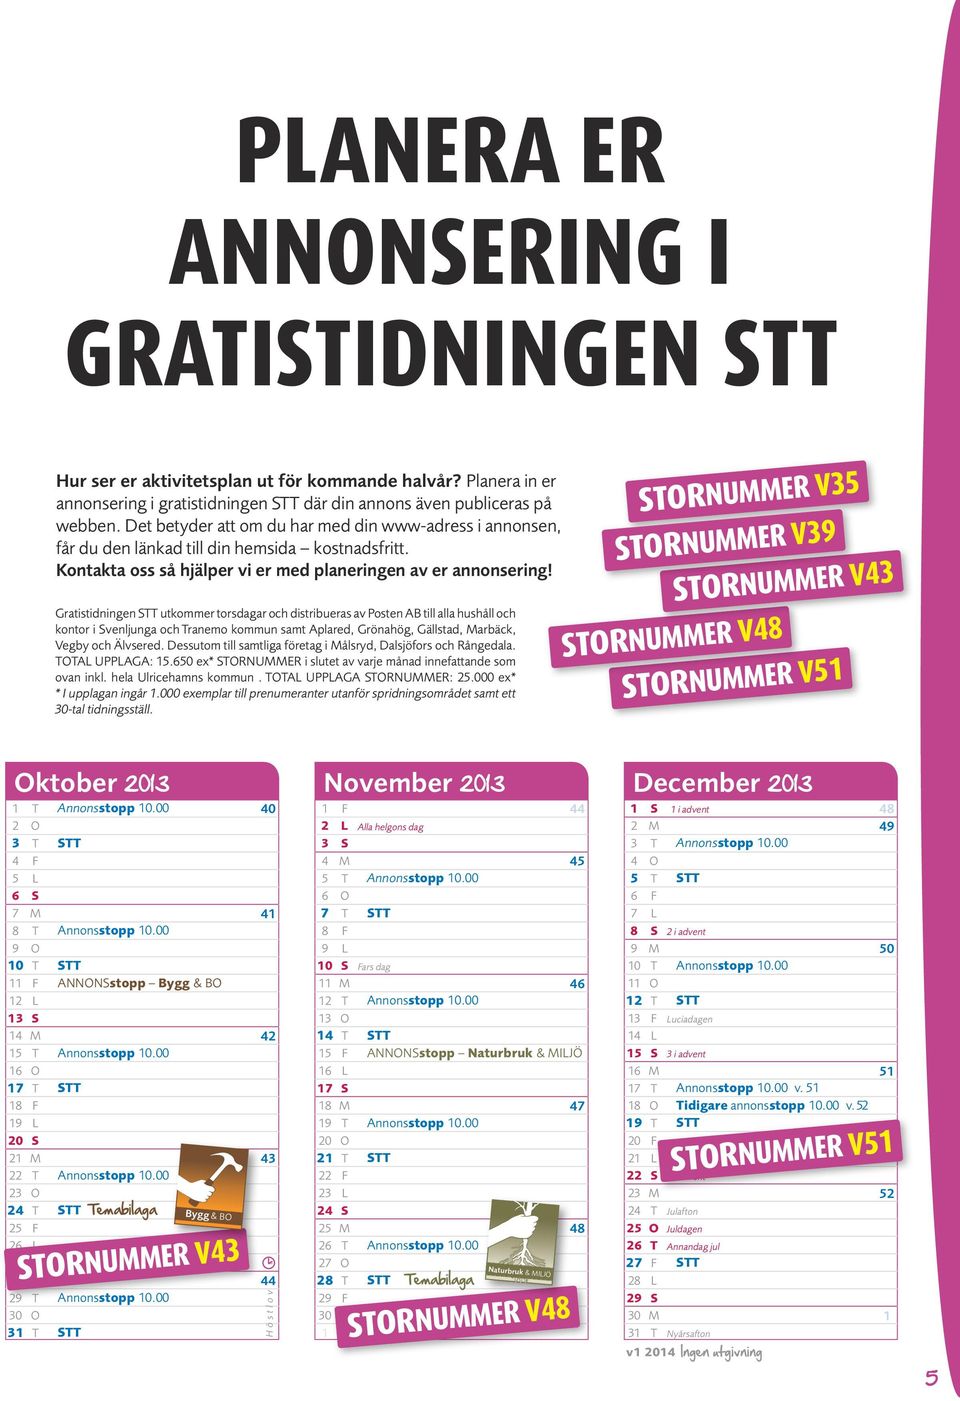 Gratistidningen Stt utkommer torsdagar och distribueras av Posten AB till alla hushåll och kontor i Svenljunga och tranemo kommun samt Aplared, Grönahög, Gällstad, Marbäck, Vegby och Älvsered.